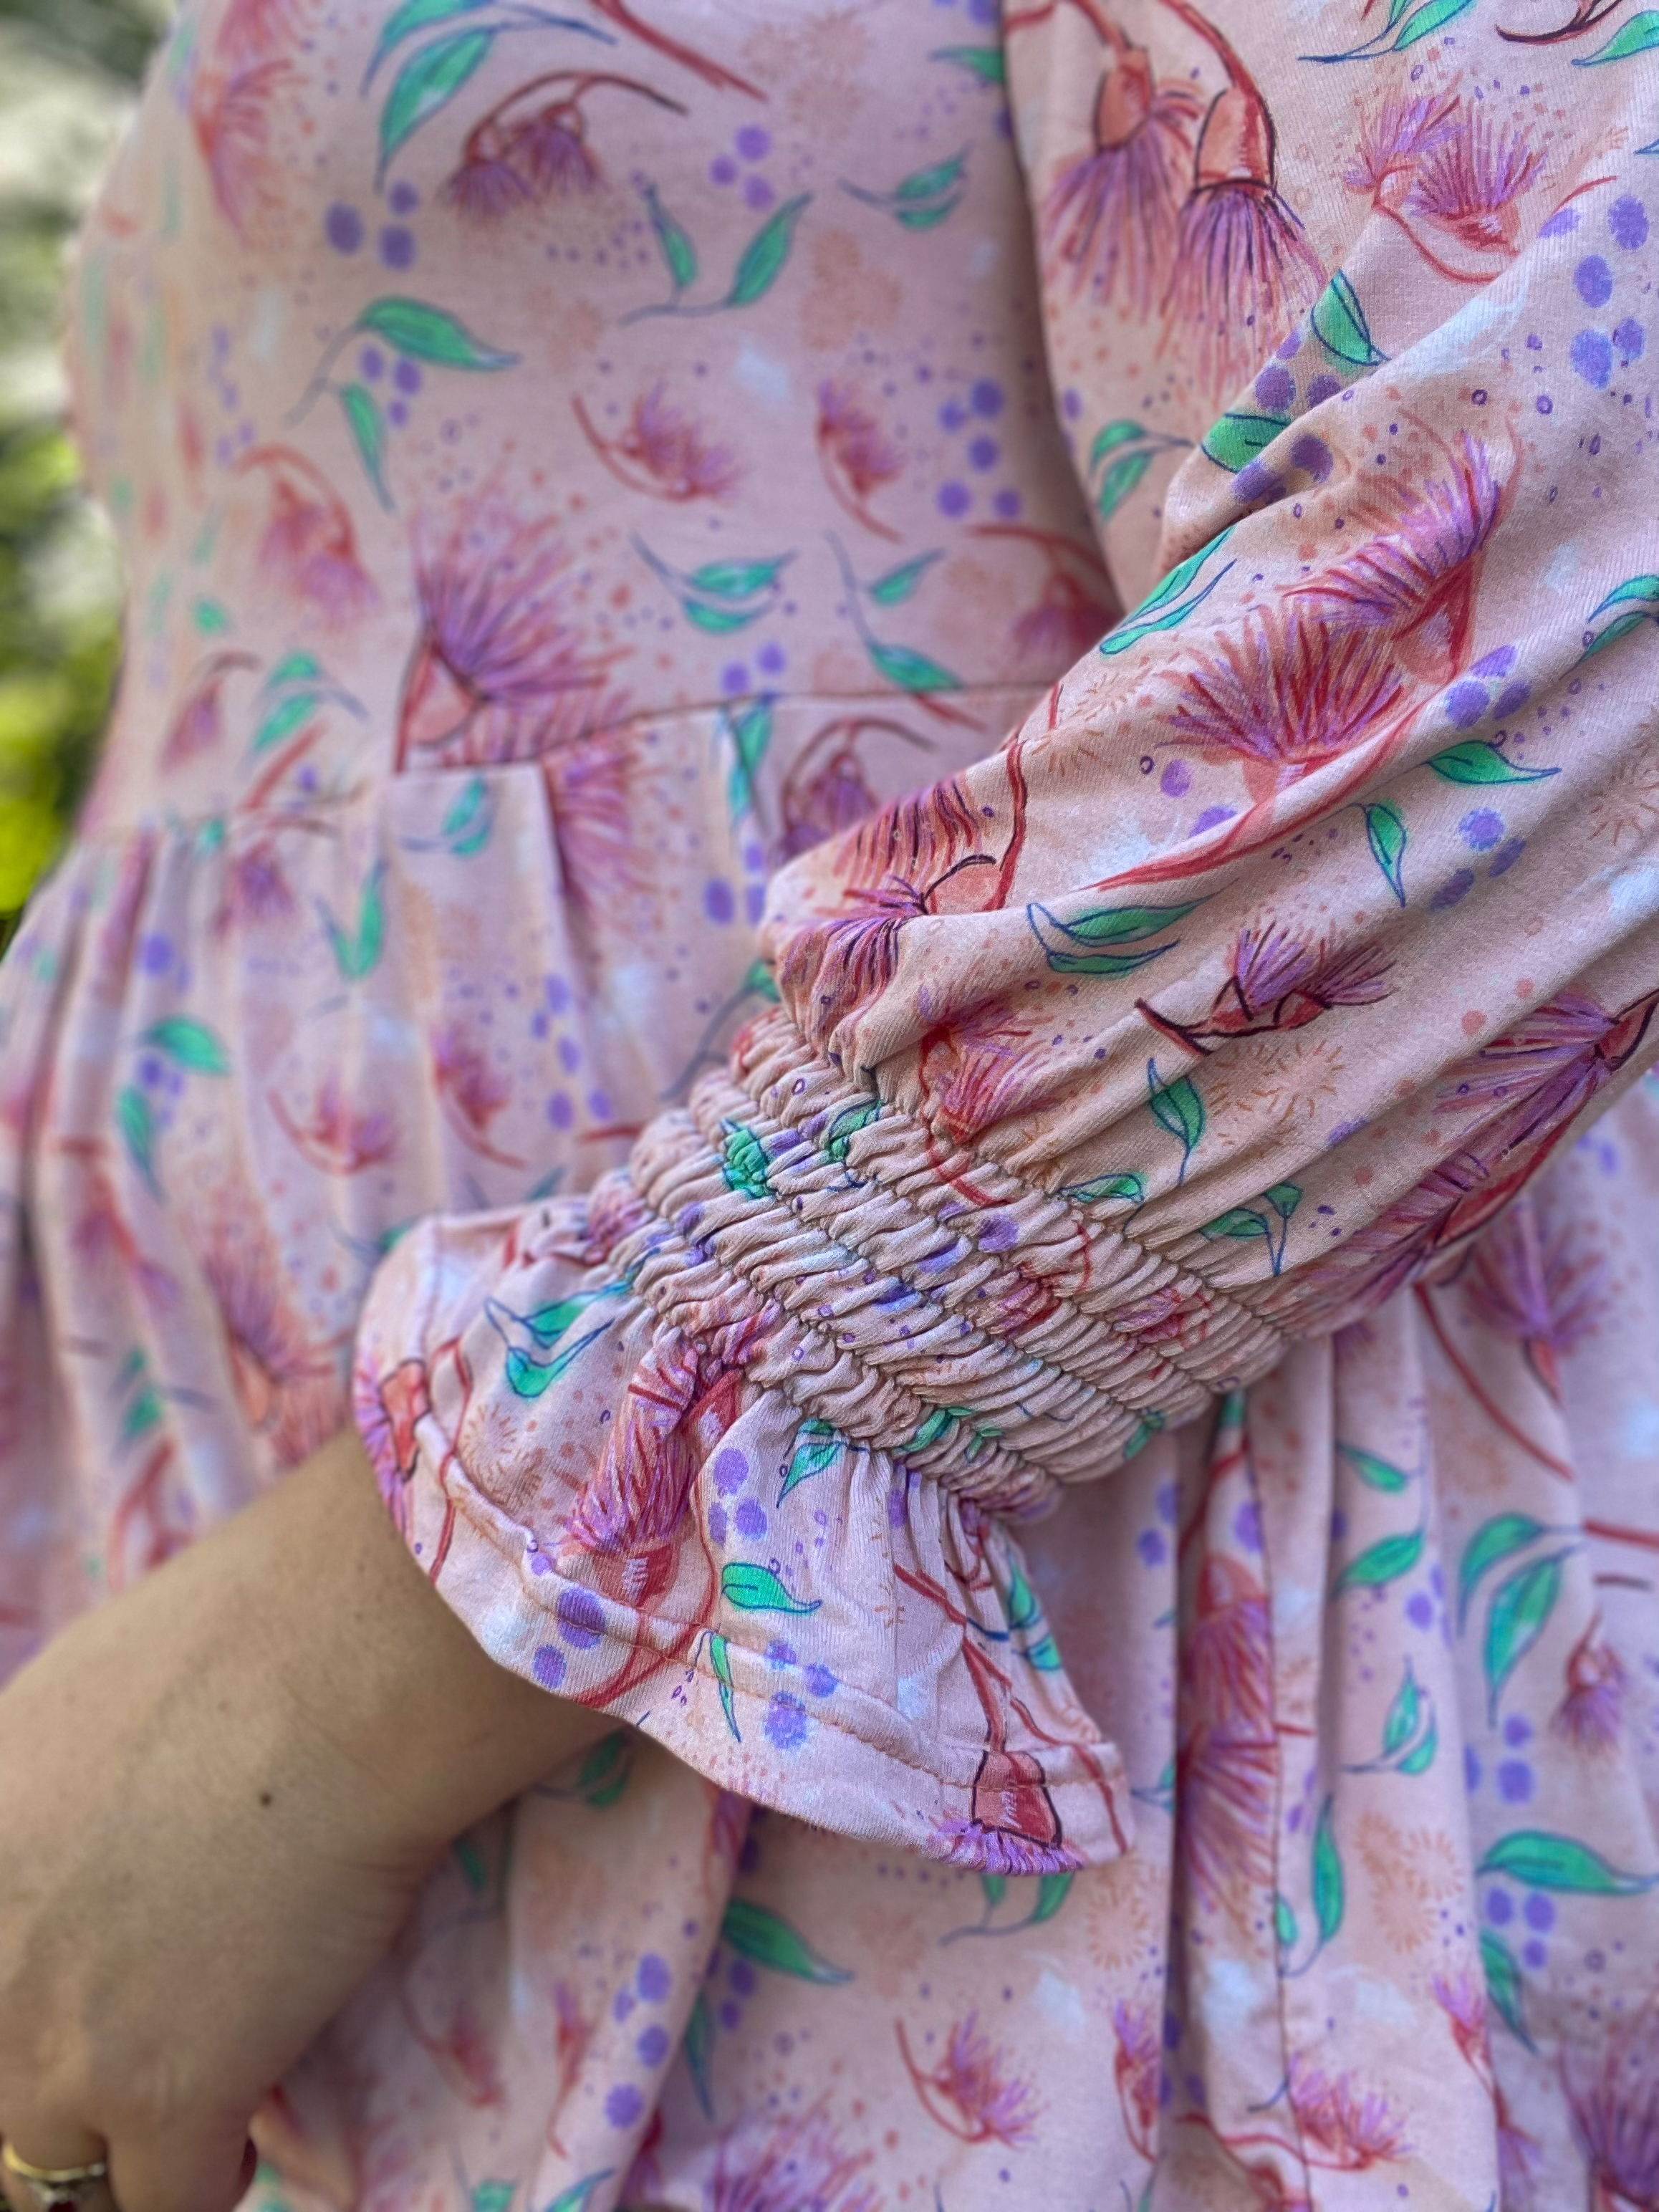 Diana Dress & Top Pattern by Ellie & Mac Pink floral top